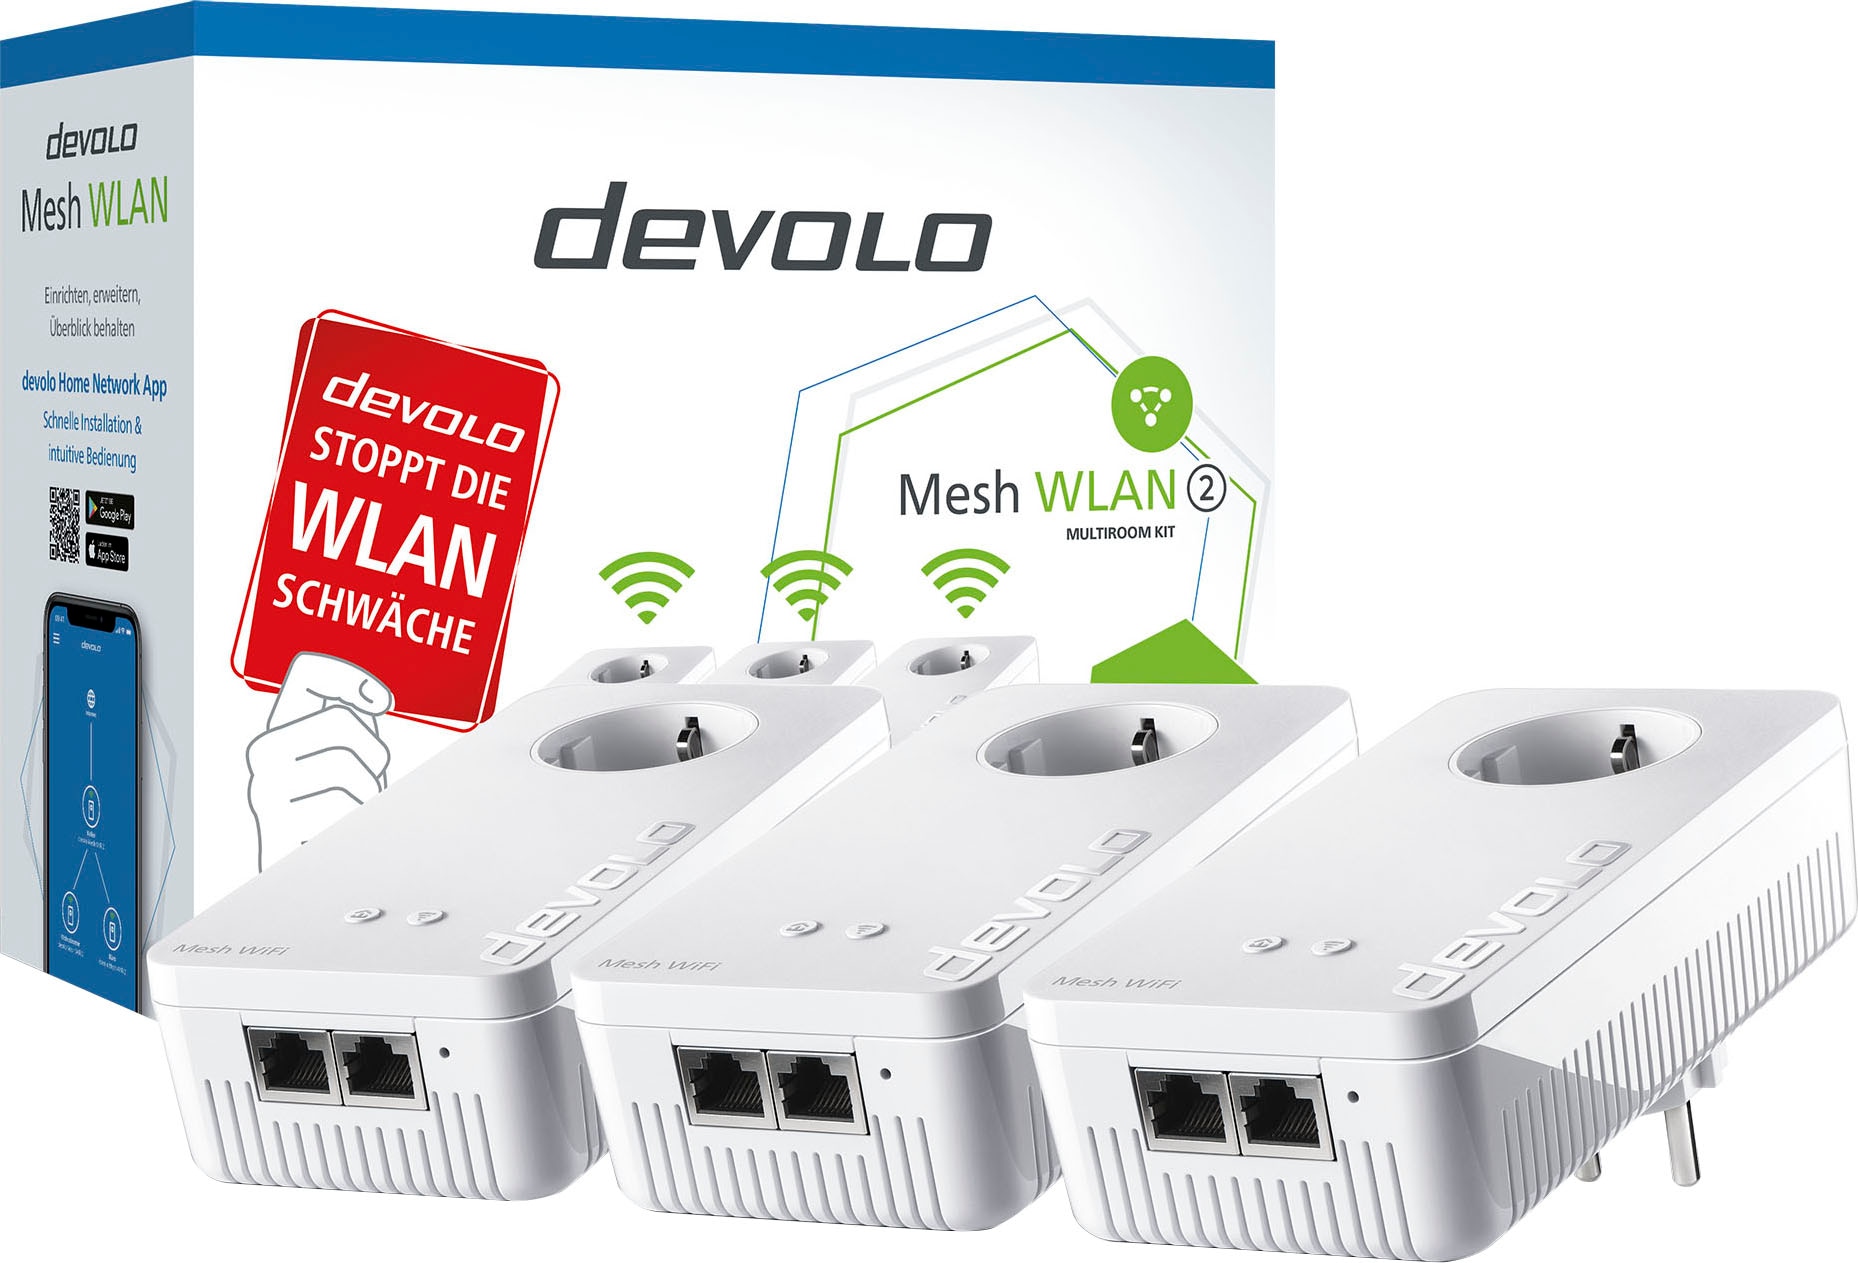 2 DEVOLO Kit« »Mesh im jetzt Multiroom WLAN Netzwerk-Switch %Sale